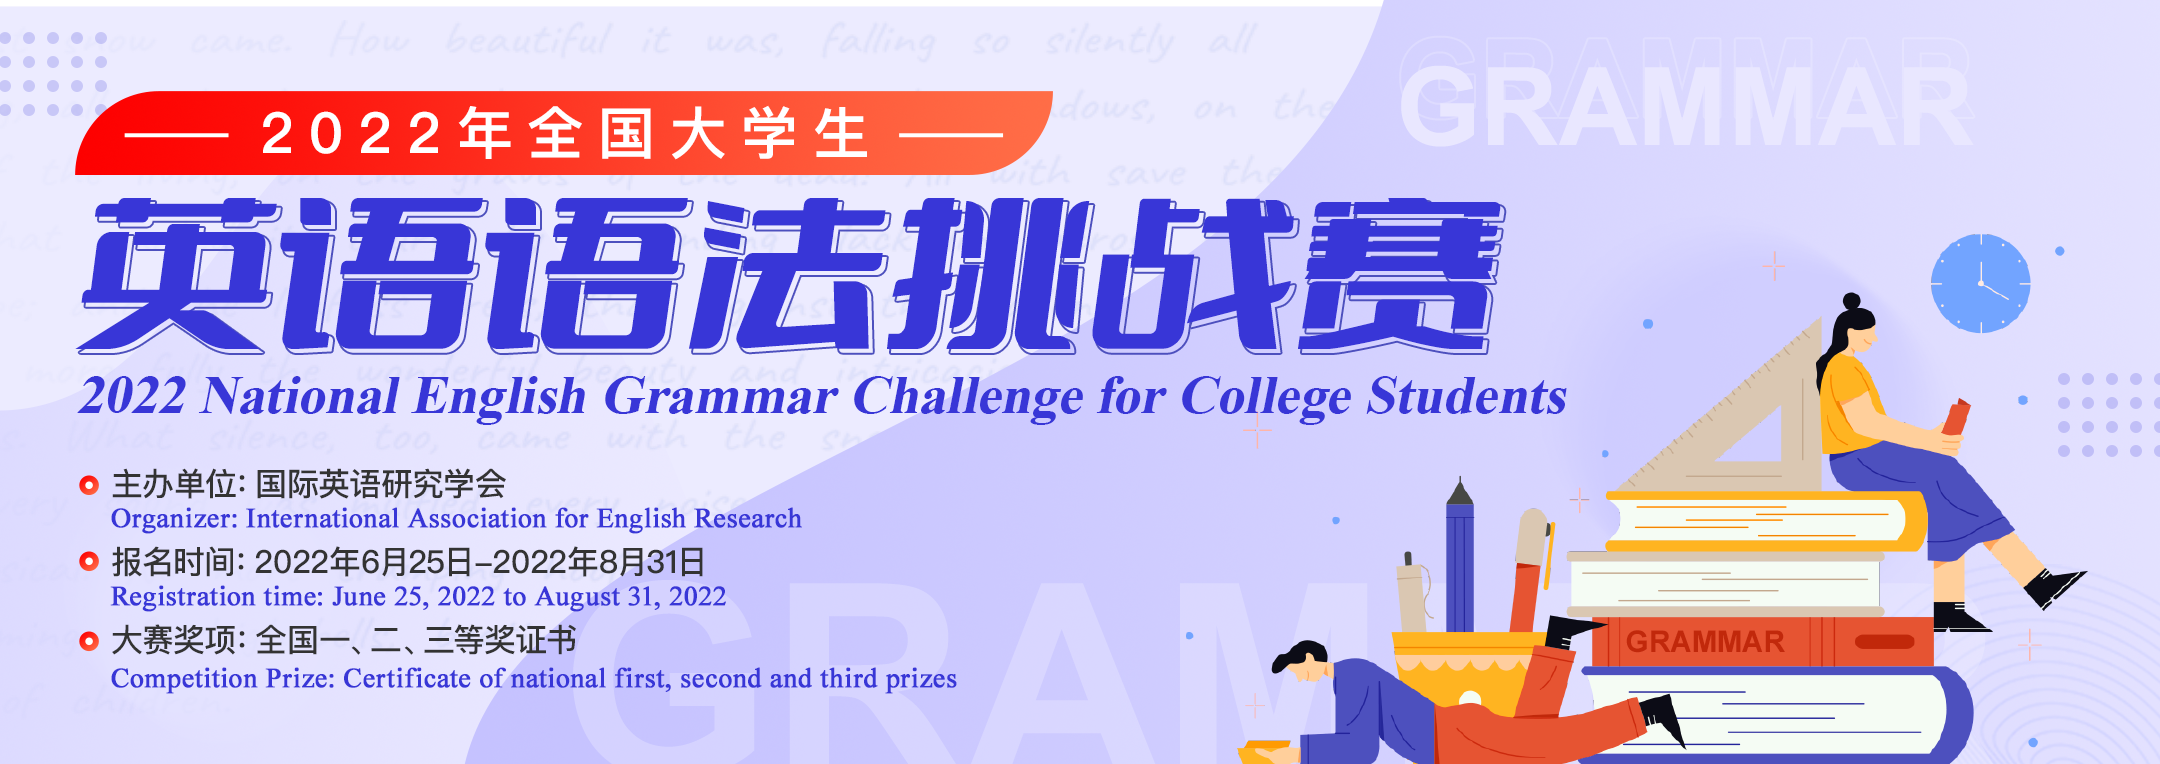 2022年全國大學生英語語法挑戰賽